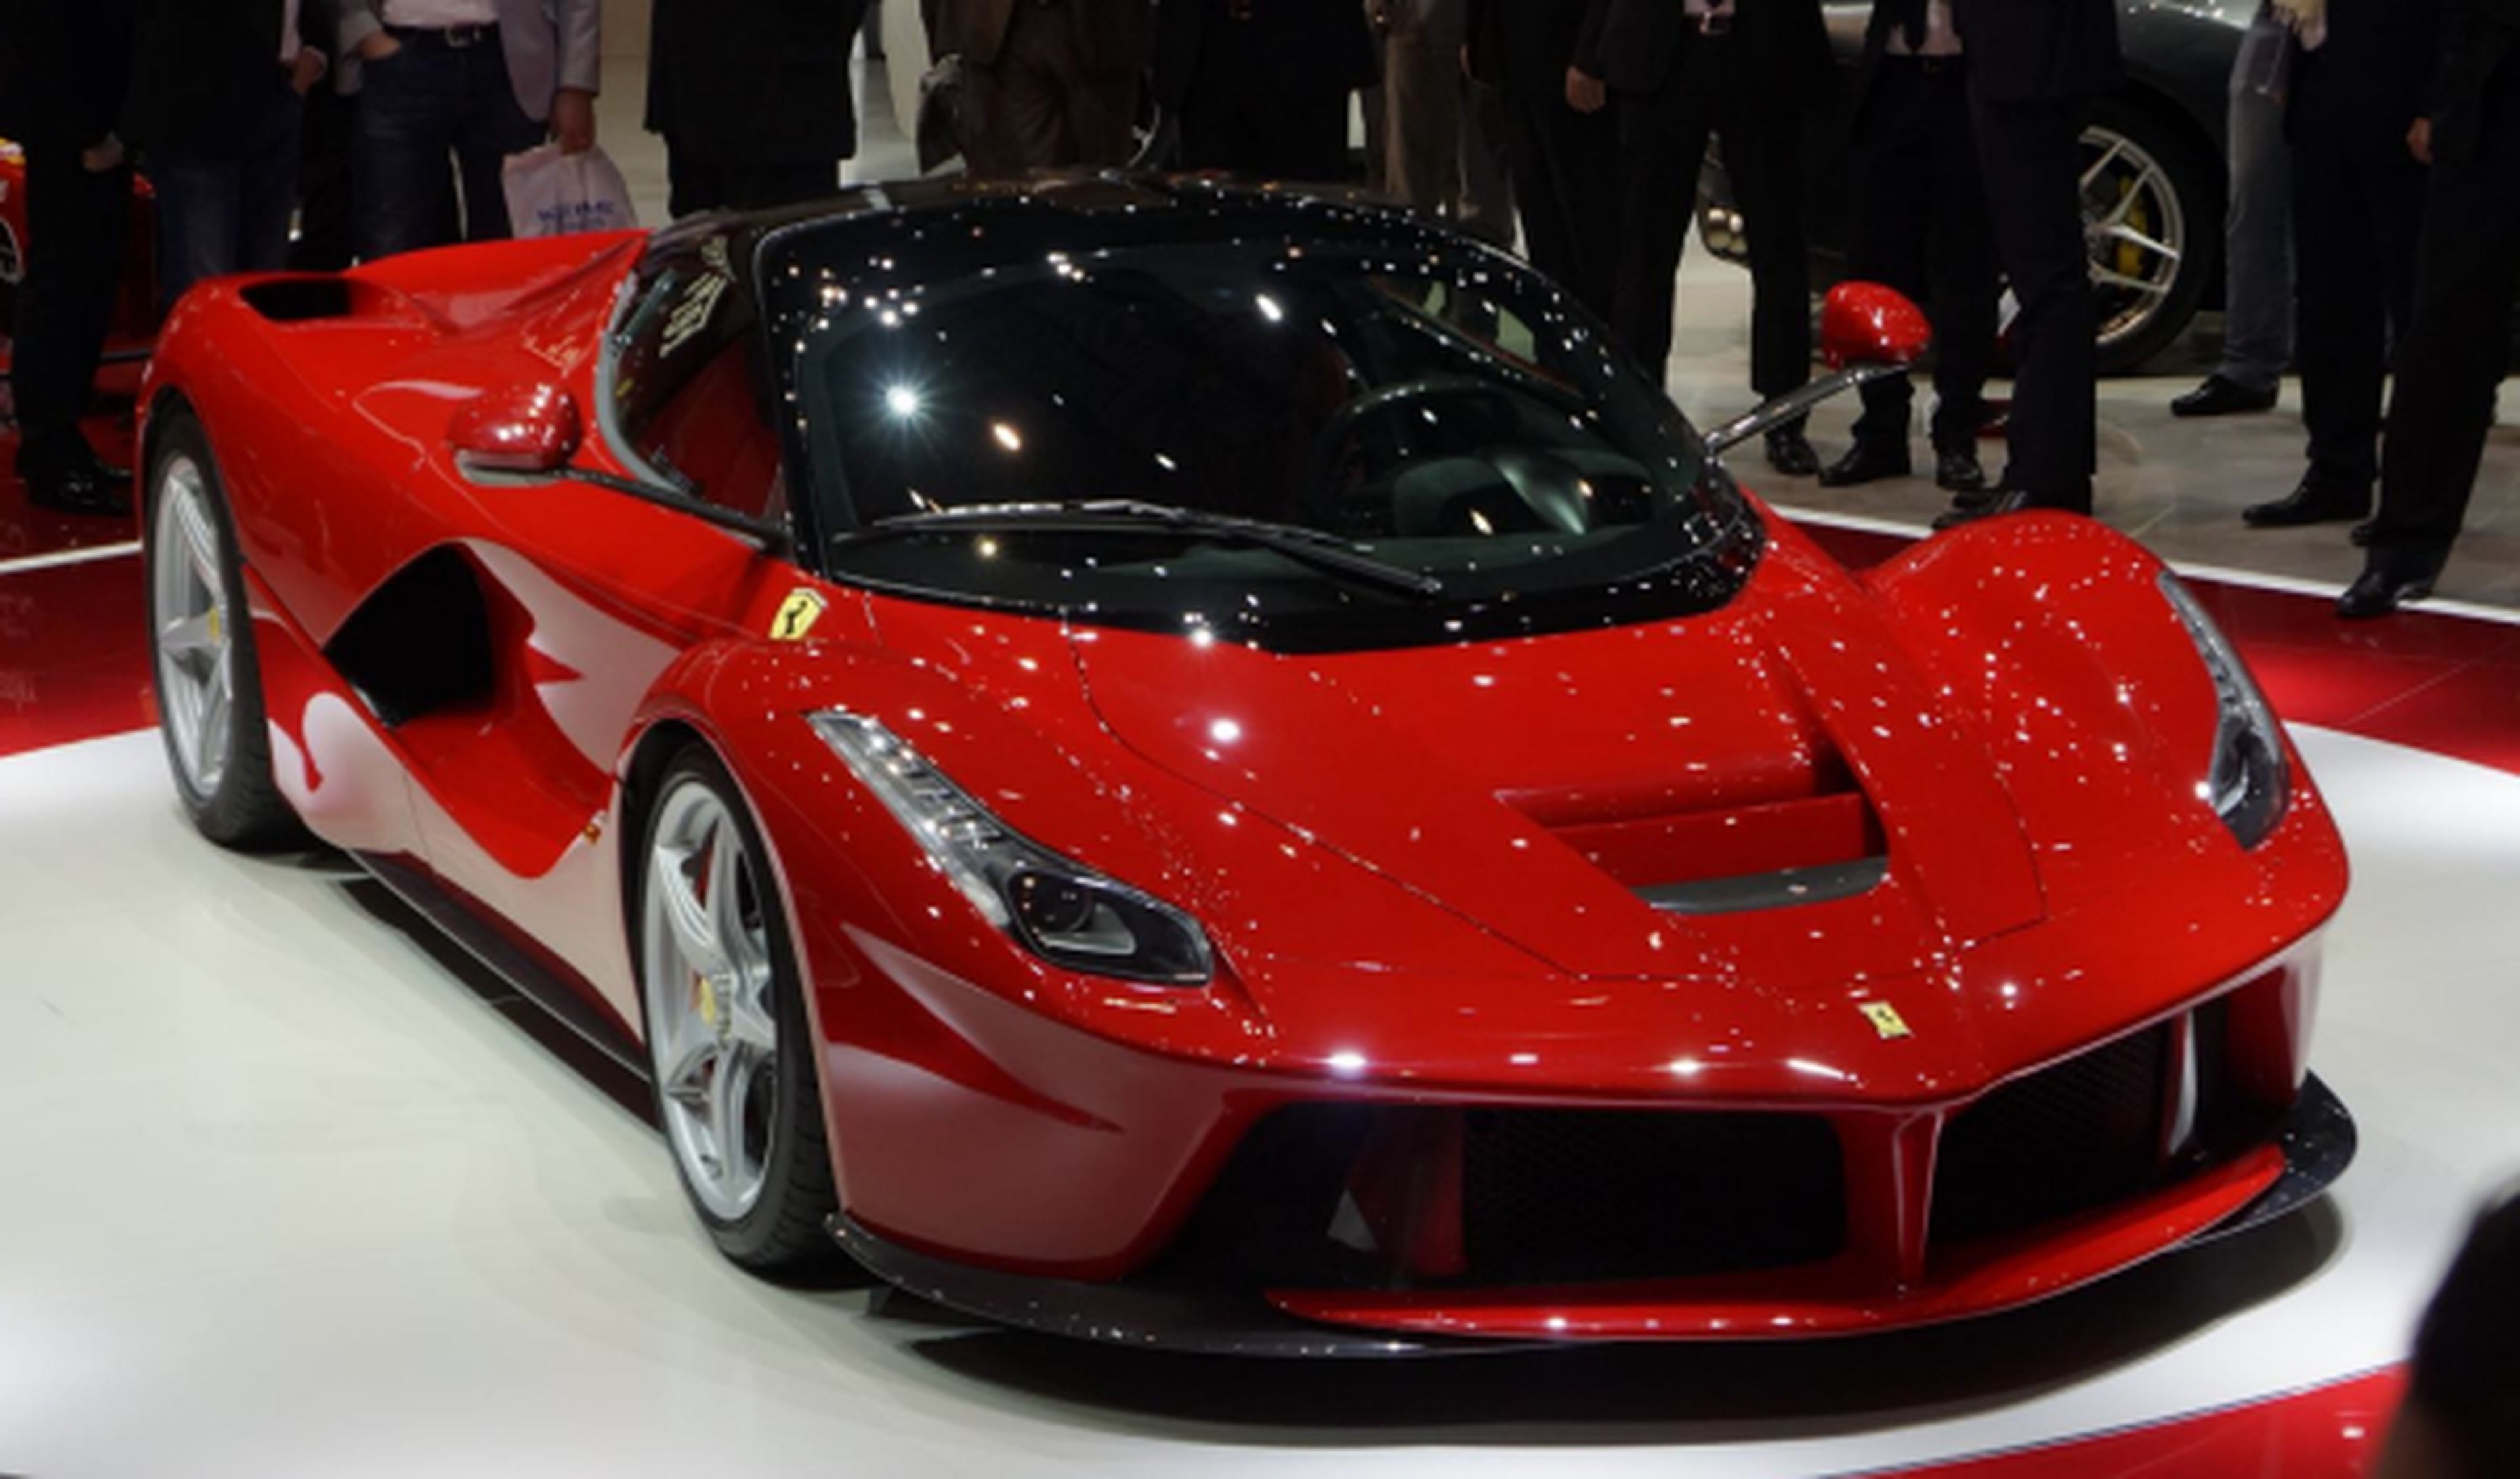 Confirmado: el Ferrari F70 debutará en el Salón de Ginebra